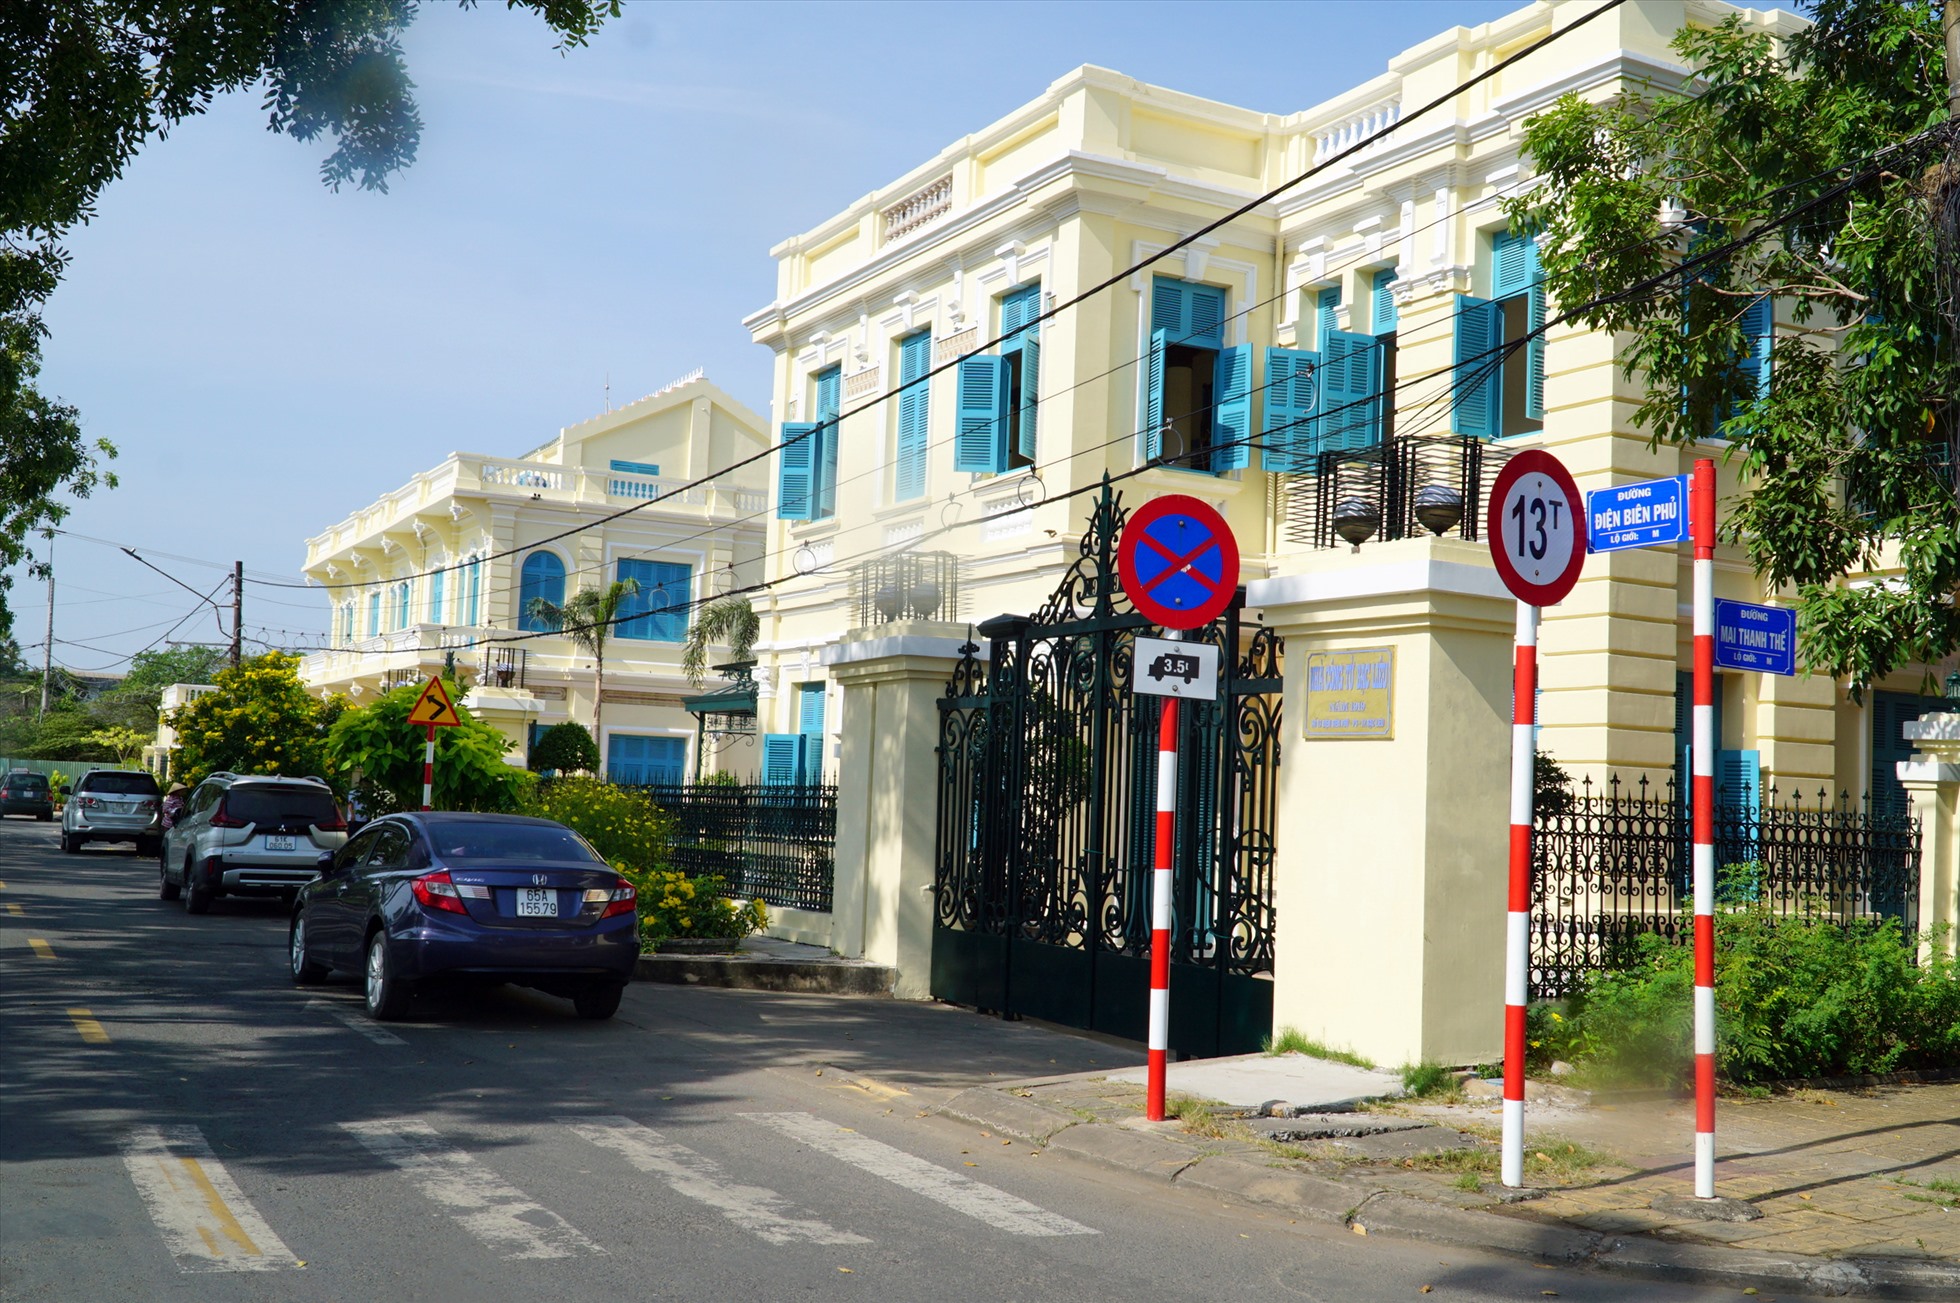 Nhà Công tử Bạc Liêu (tên thật là Trần Trinh Huy) tọa lạc tại số 13 Điện Biên Phủ, phường 3, thành phố Bạc Liêu, bên cạnh bờ sông Bạc Liêu. Ngôi biệt thự mang kiến trúc phương Tây, được xây dựng vào năm 1917 kéo dài đến năm 1919 thì hoàn thành.